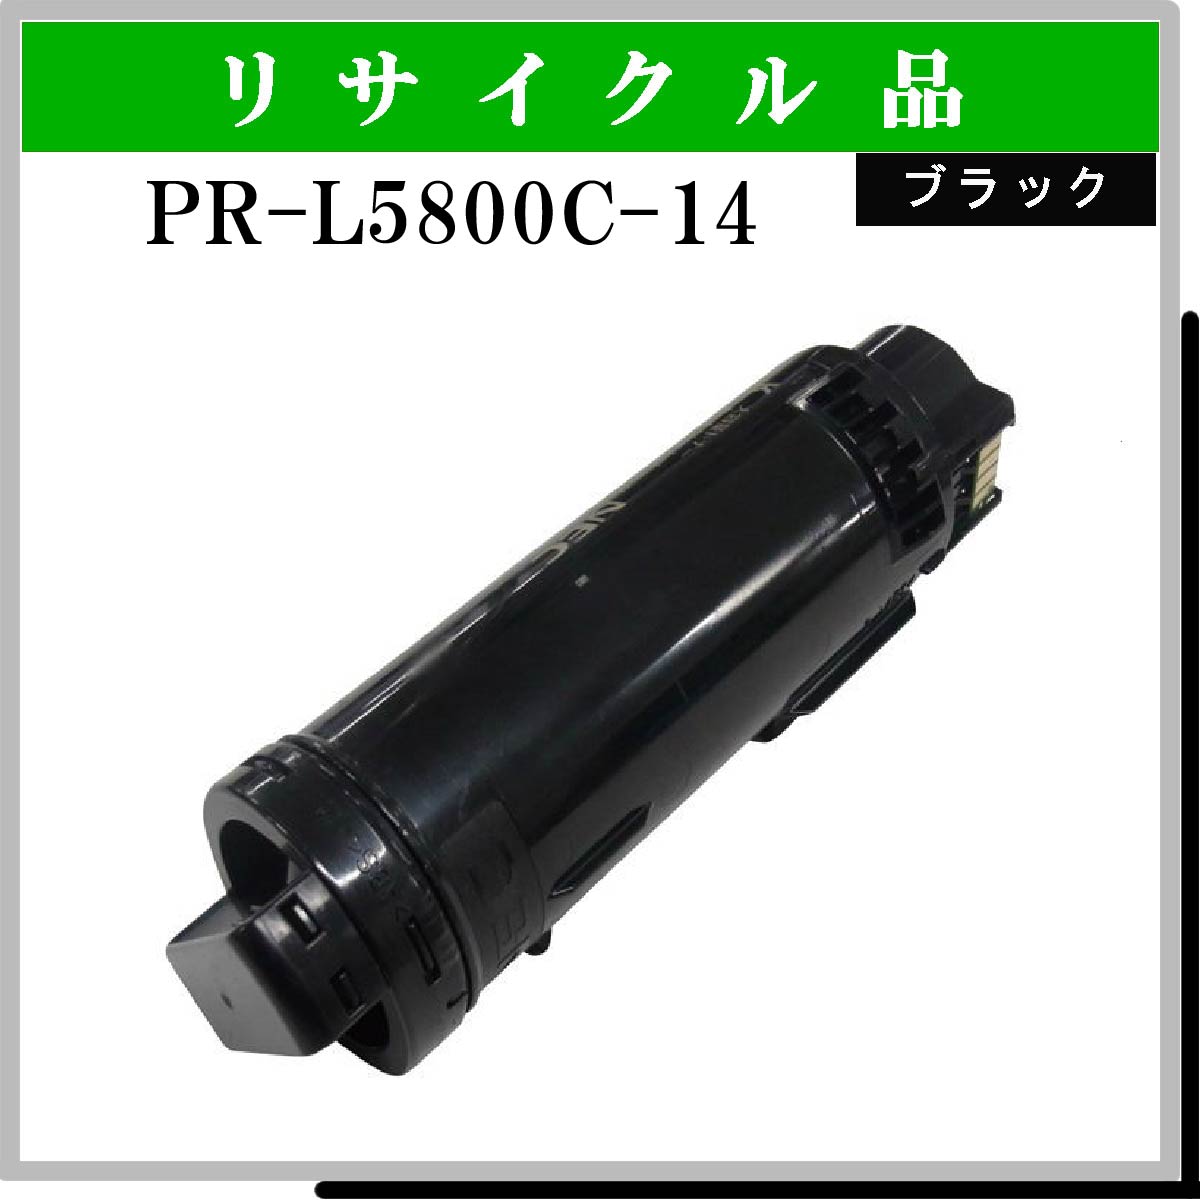 PR-L5800C-14